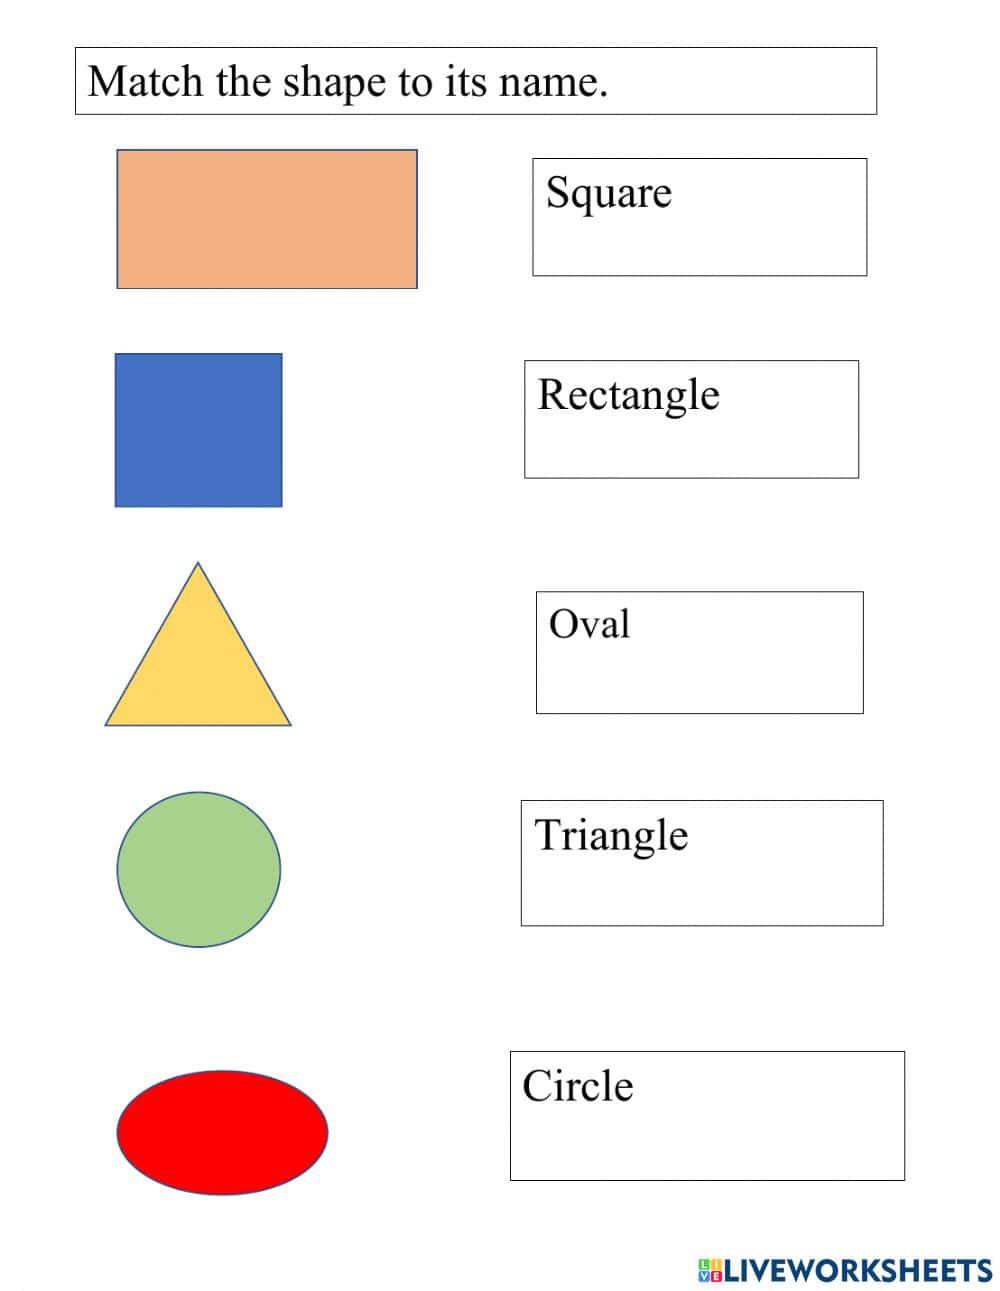 Formasnombres Colores Actividad De Aprendizaje Imagen